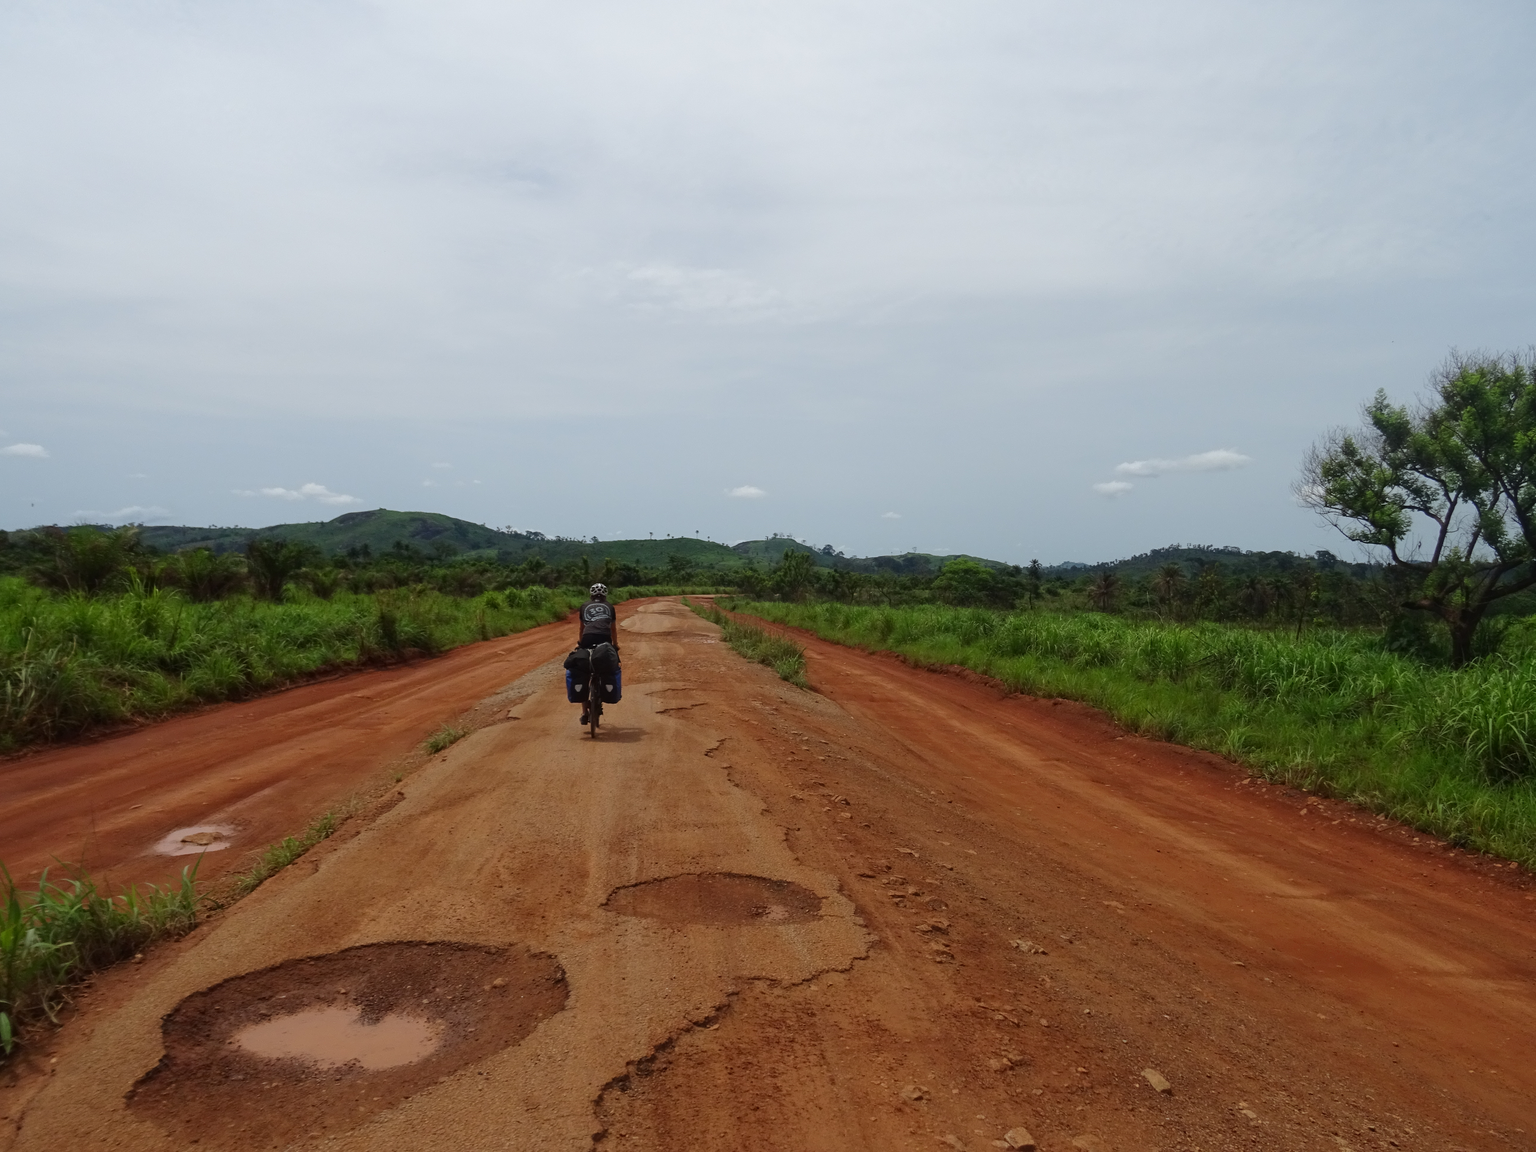 Bild 26
Guinea (19.05.2019):
Die ehemalige Asphaltstrasse kann man sich leider nur noch vorstellen. Diese Situation wie hier im Süden von Guinea trafen wir zu unserem Frust auch in vielen anderen Länd ...